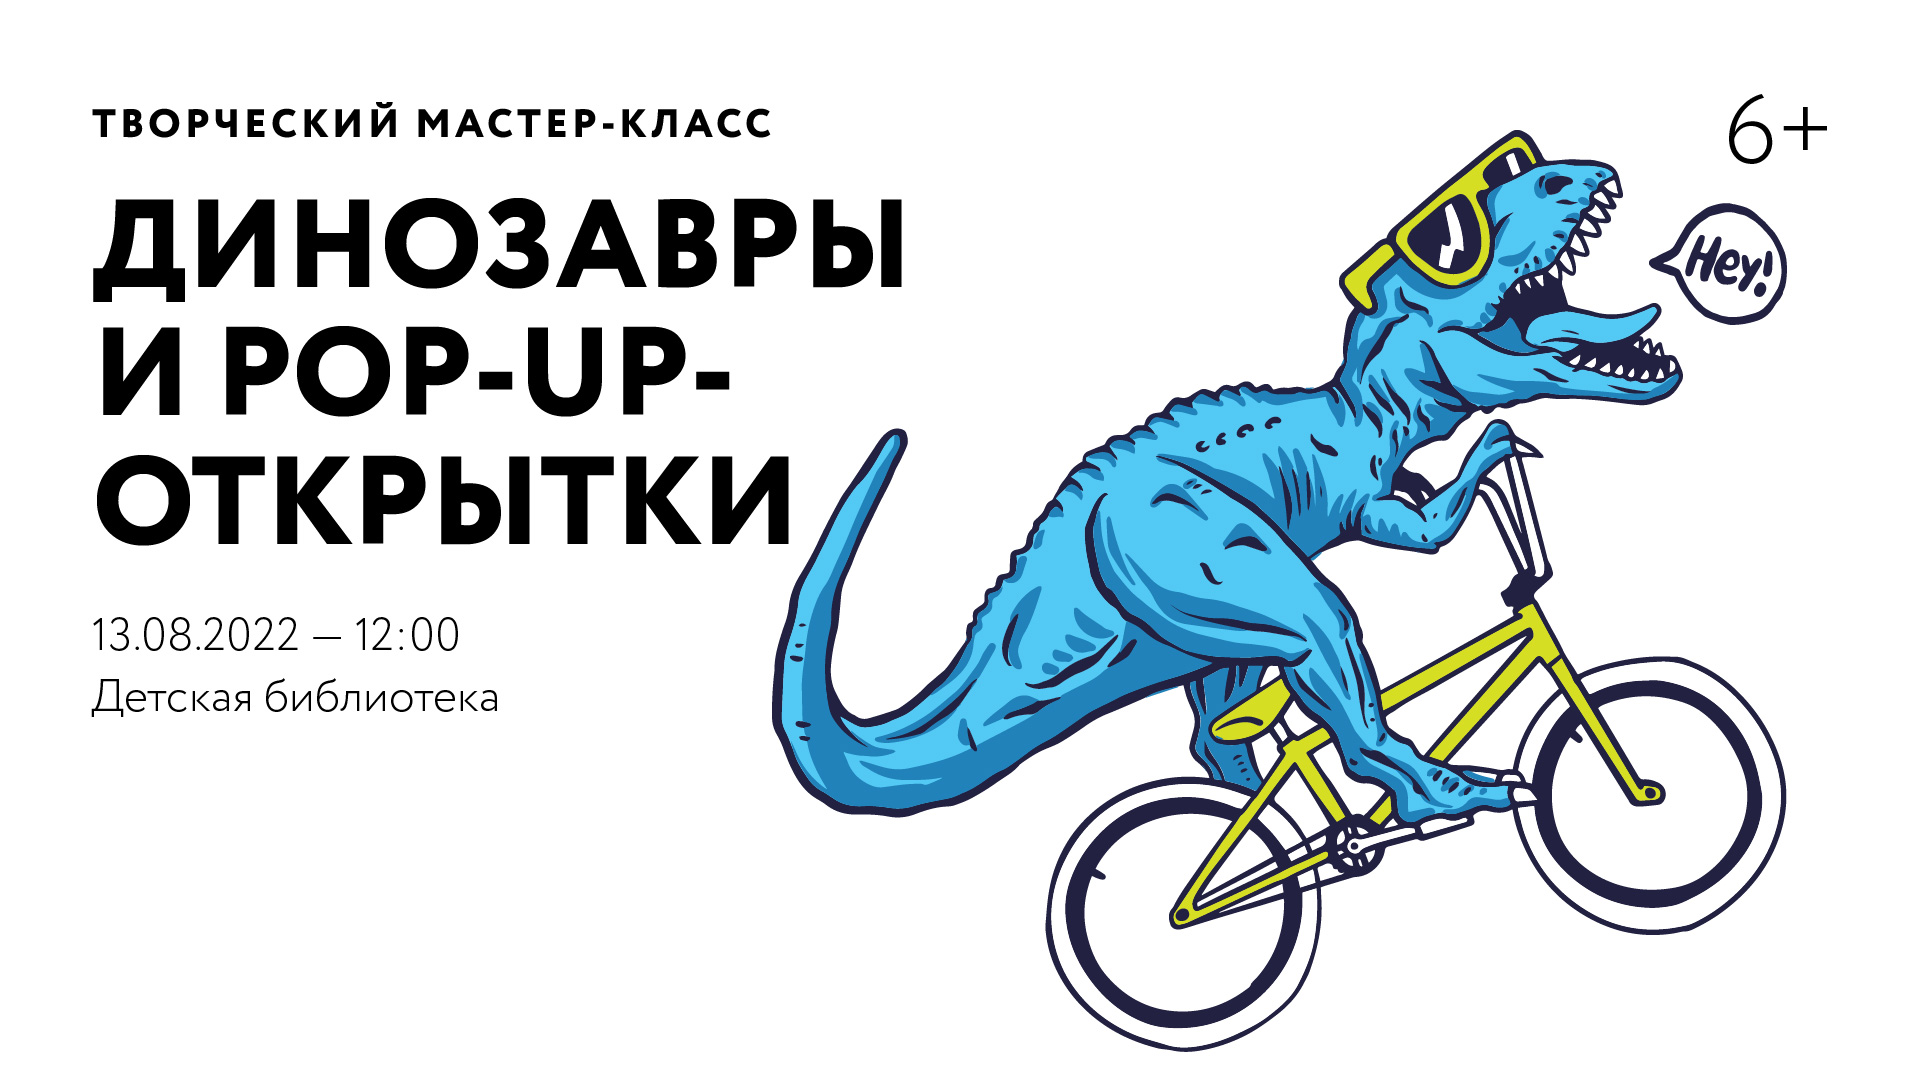 Творческий мастер-класс «Динозавры и Pop-Up-открытки»